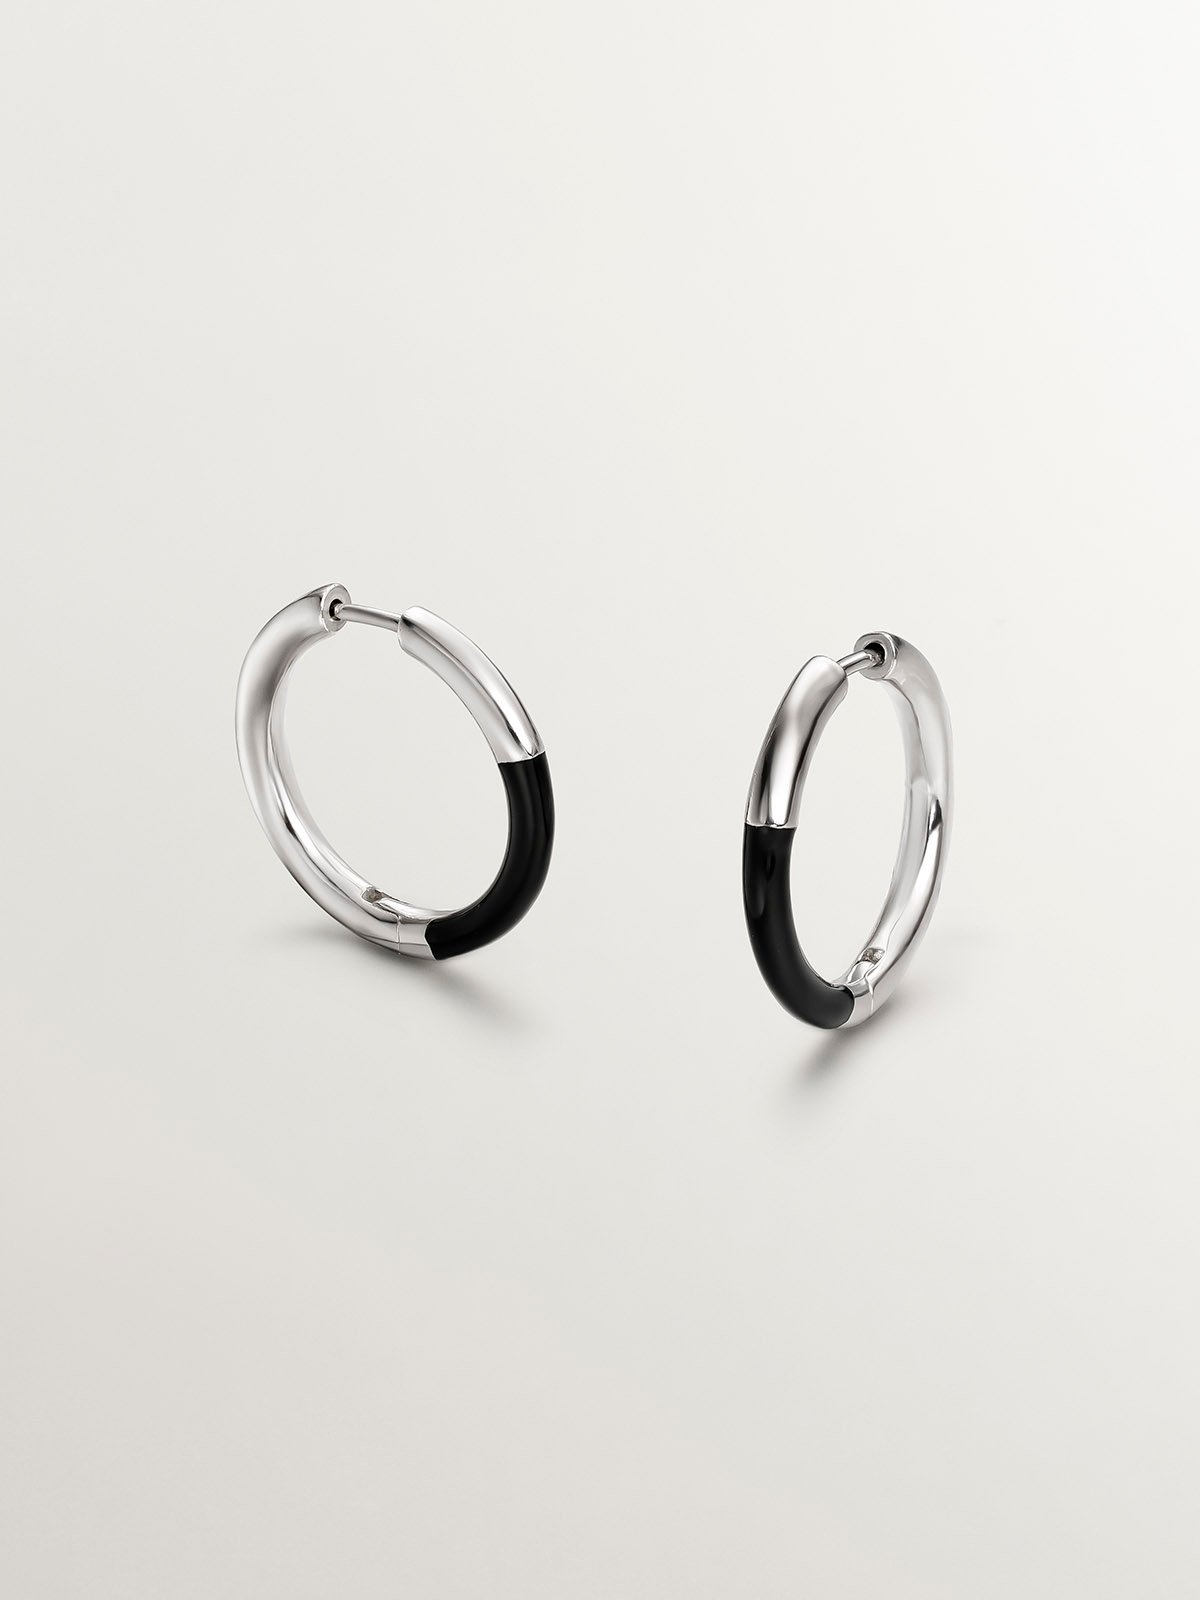 Medium hoop earrings in 925 silver with black enamel.